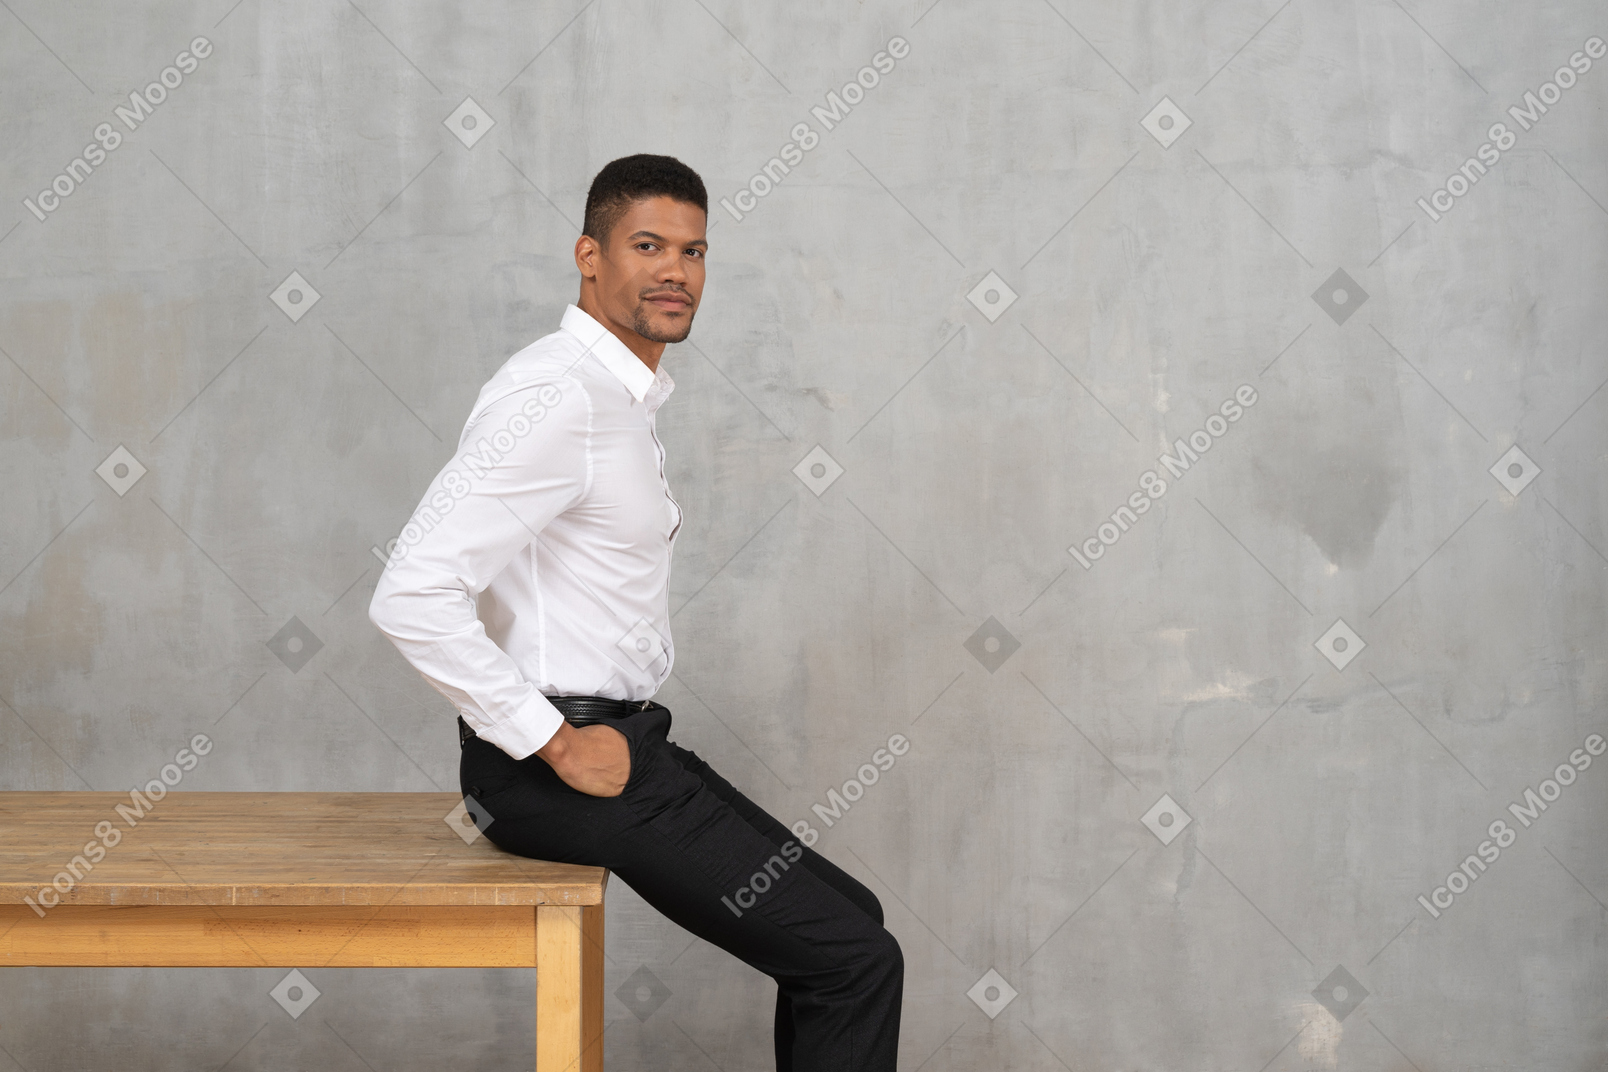 Мужчина в офисной одежде сидит на столе с руками в карманах